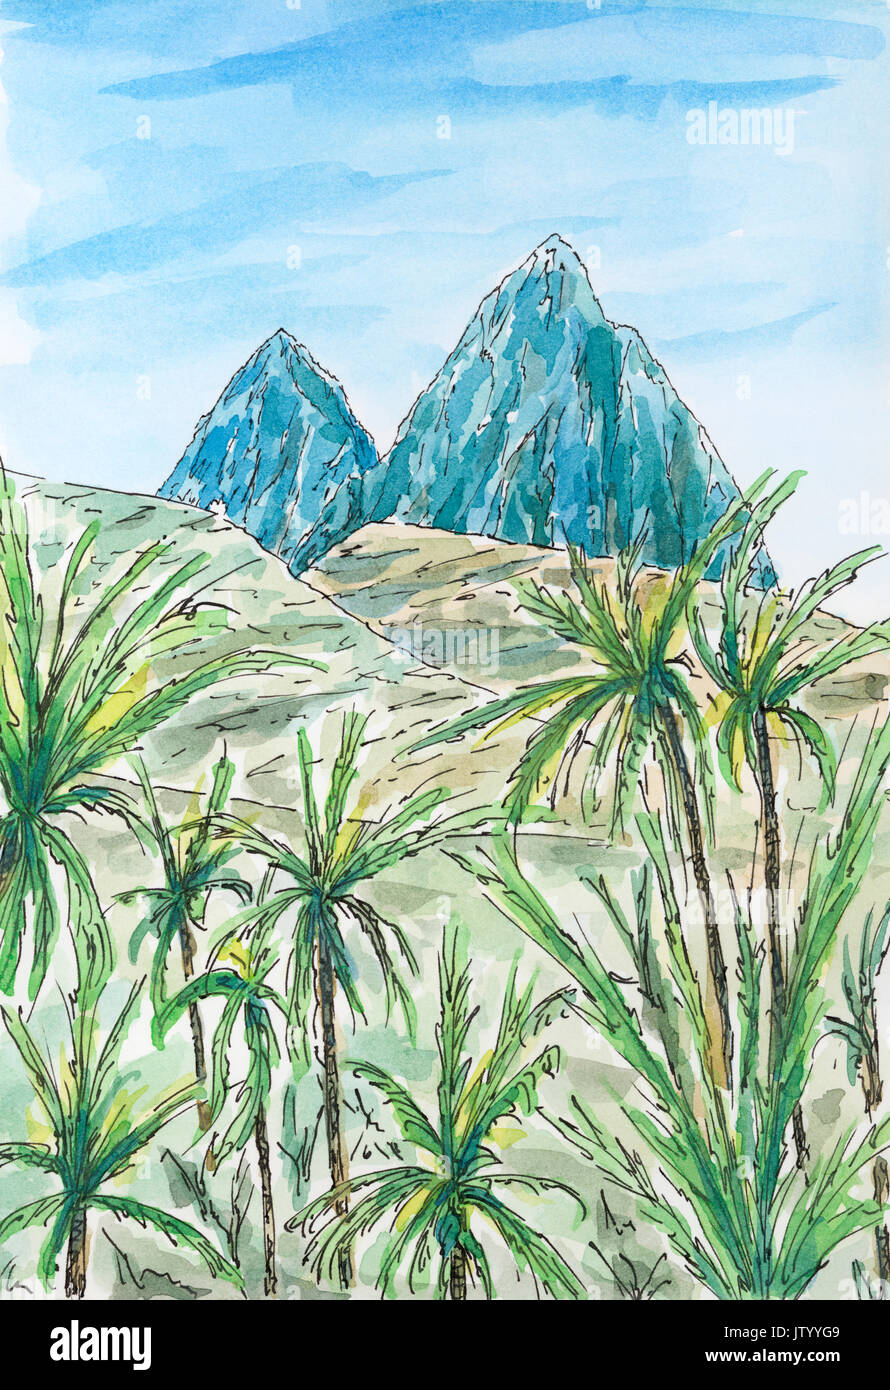 (Sous le Vent des Caraïbes Antilles) Paysage avec deux pics de montagne. Encre et aquarelle sur papier rugueux. Banque D'Images